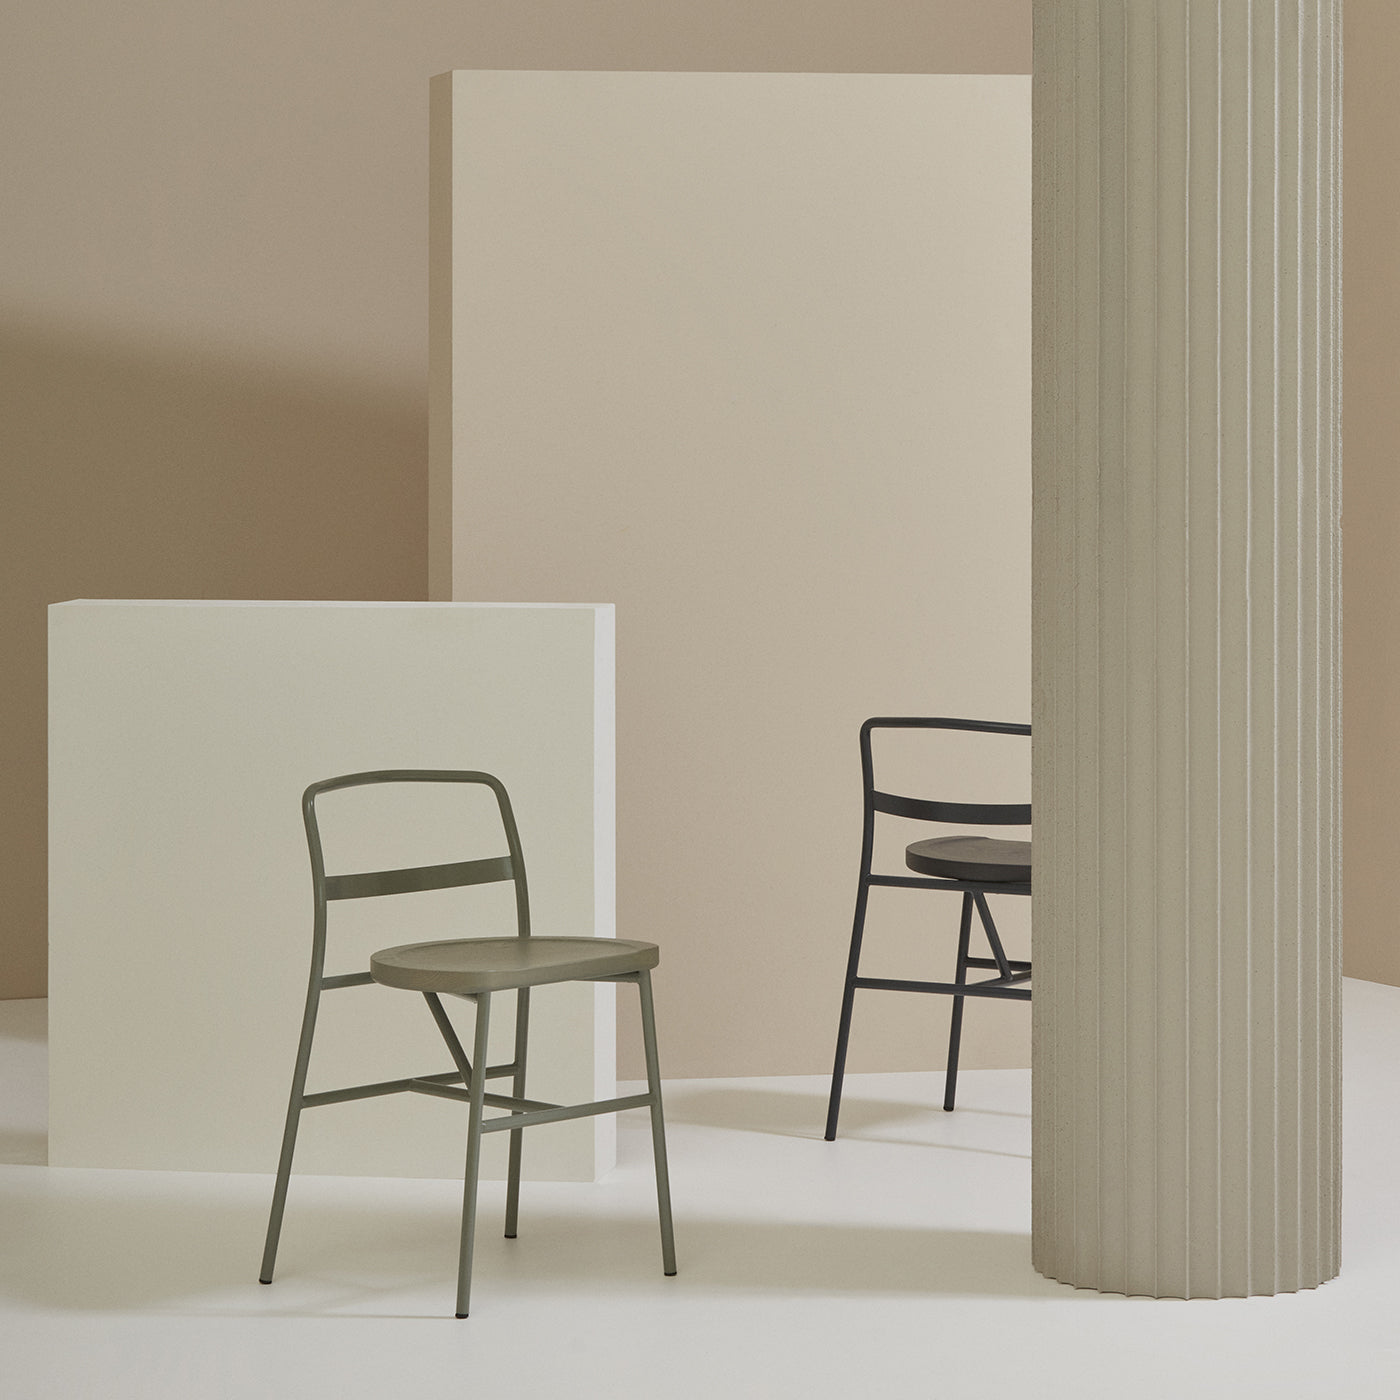 Puccio 726 Anthracite-Gray Chair by Emilio Nanni - Alternative view 3